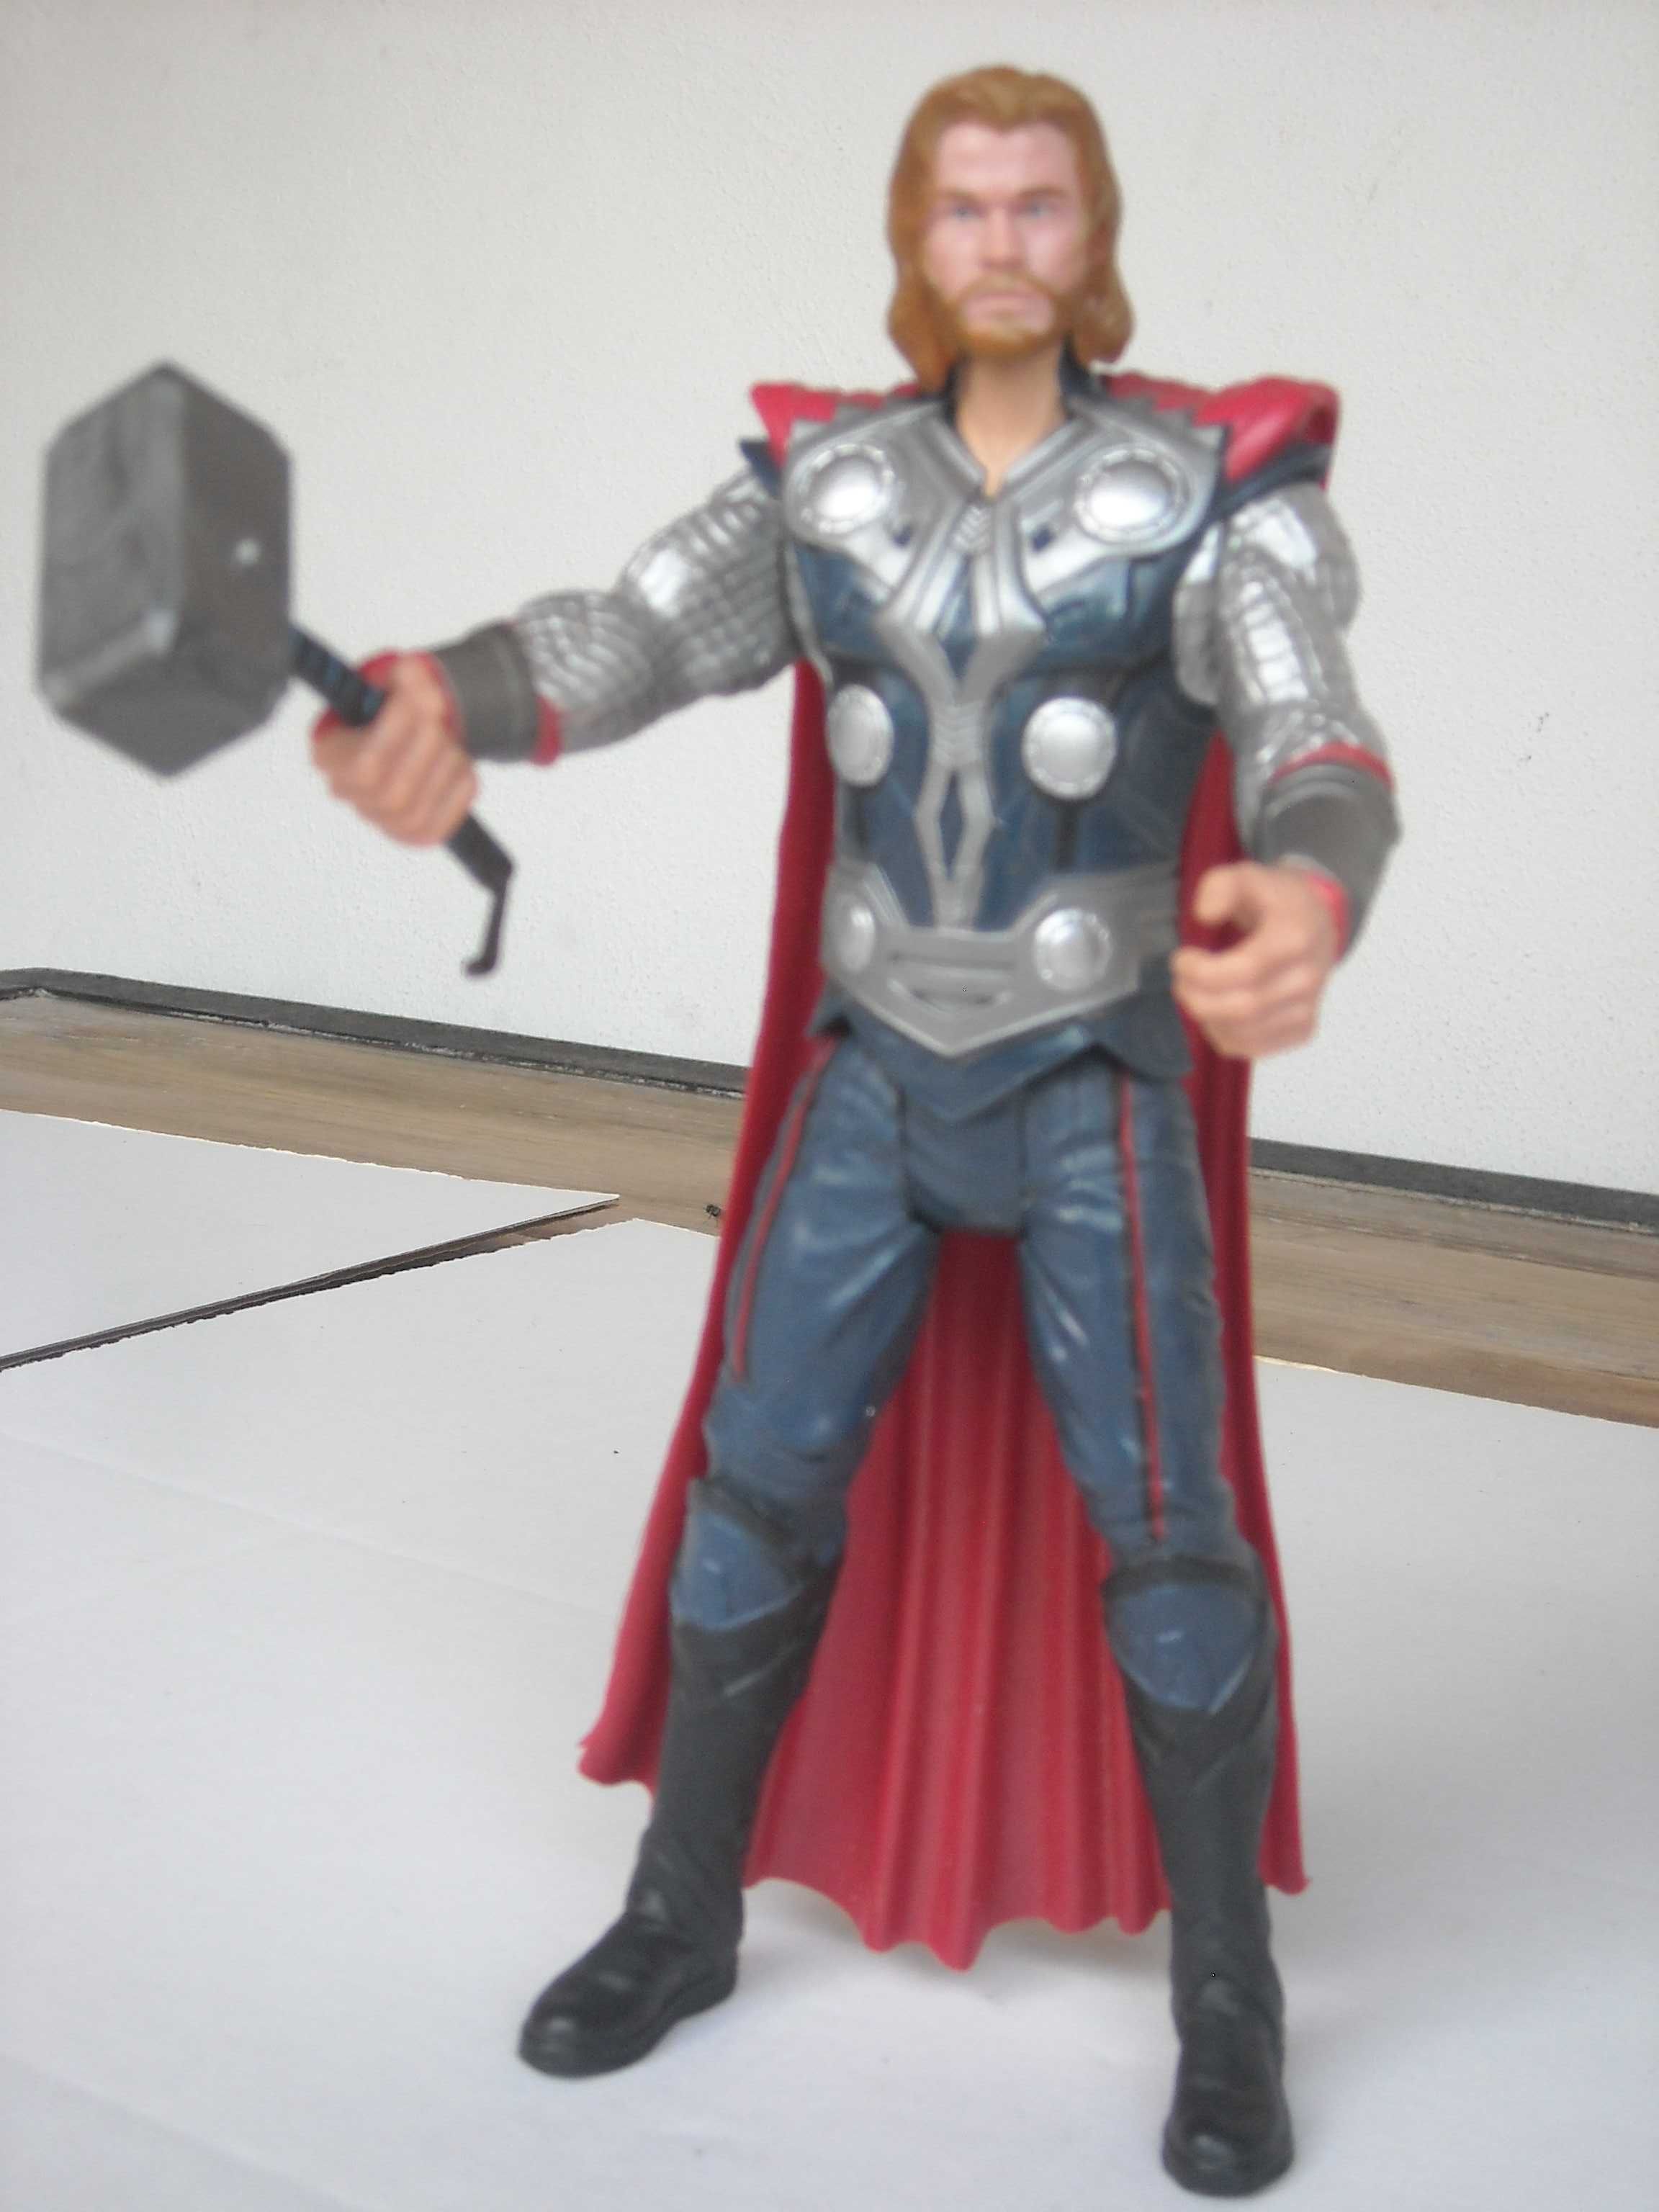 Boneco Figura Thor articulado com martelo Marvel 2011